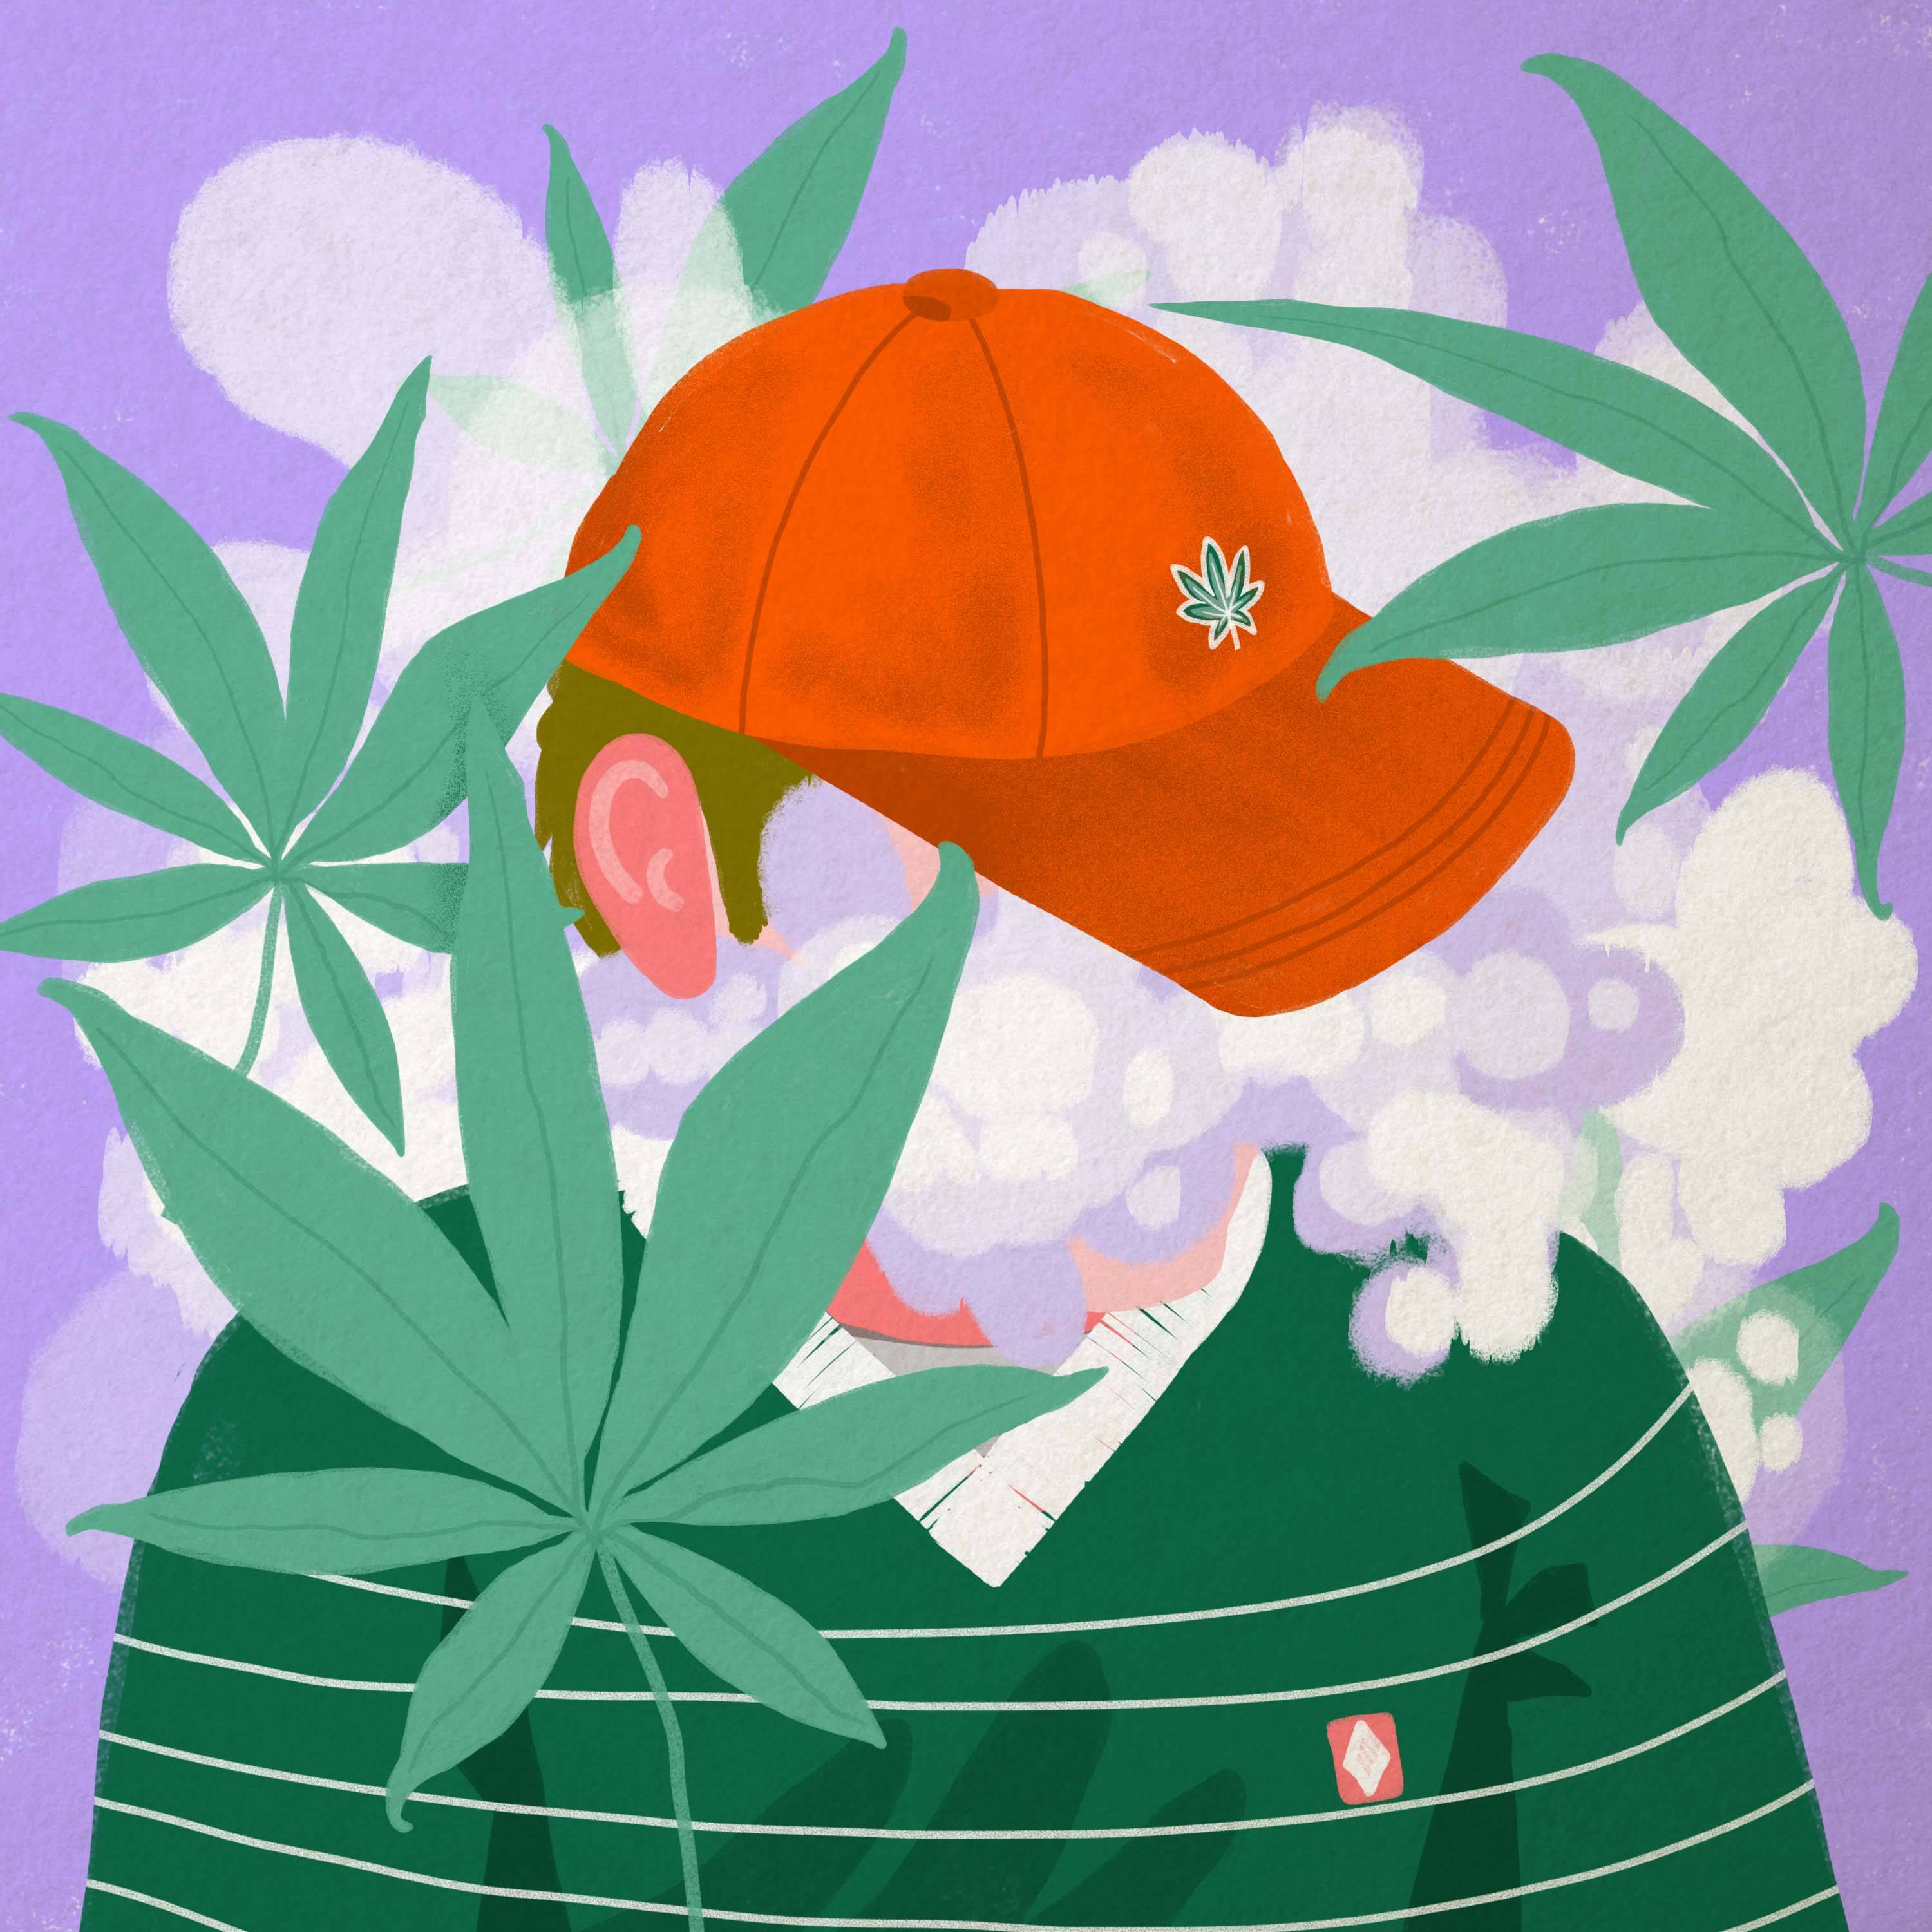 Rysnek, kolorowy, chłopak w czerwonej czapce, wokół zielone liście marihuany